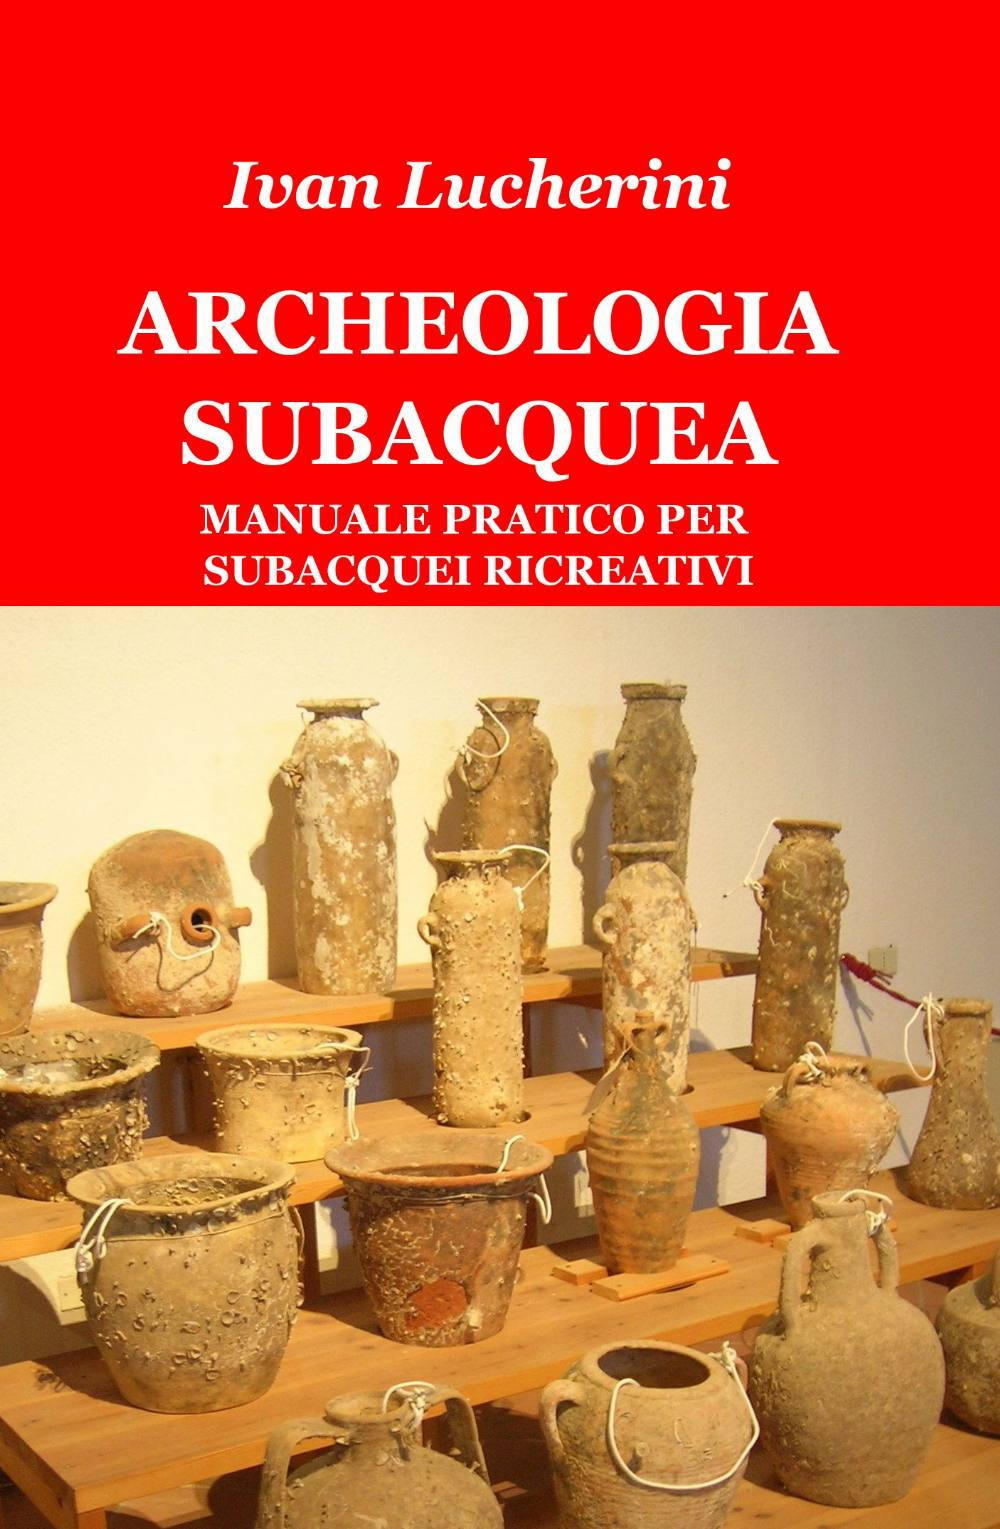 Image of Archeologia subacquea